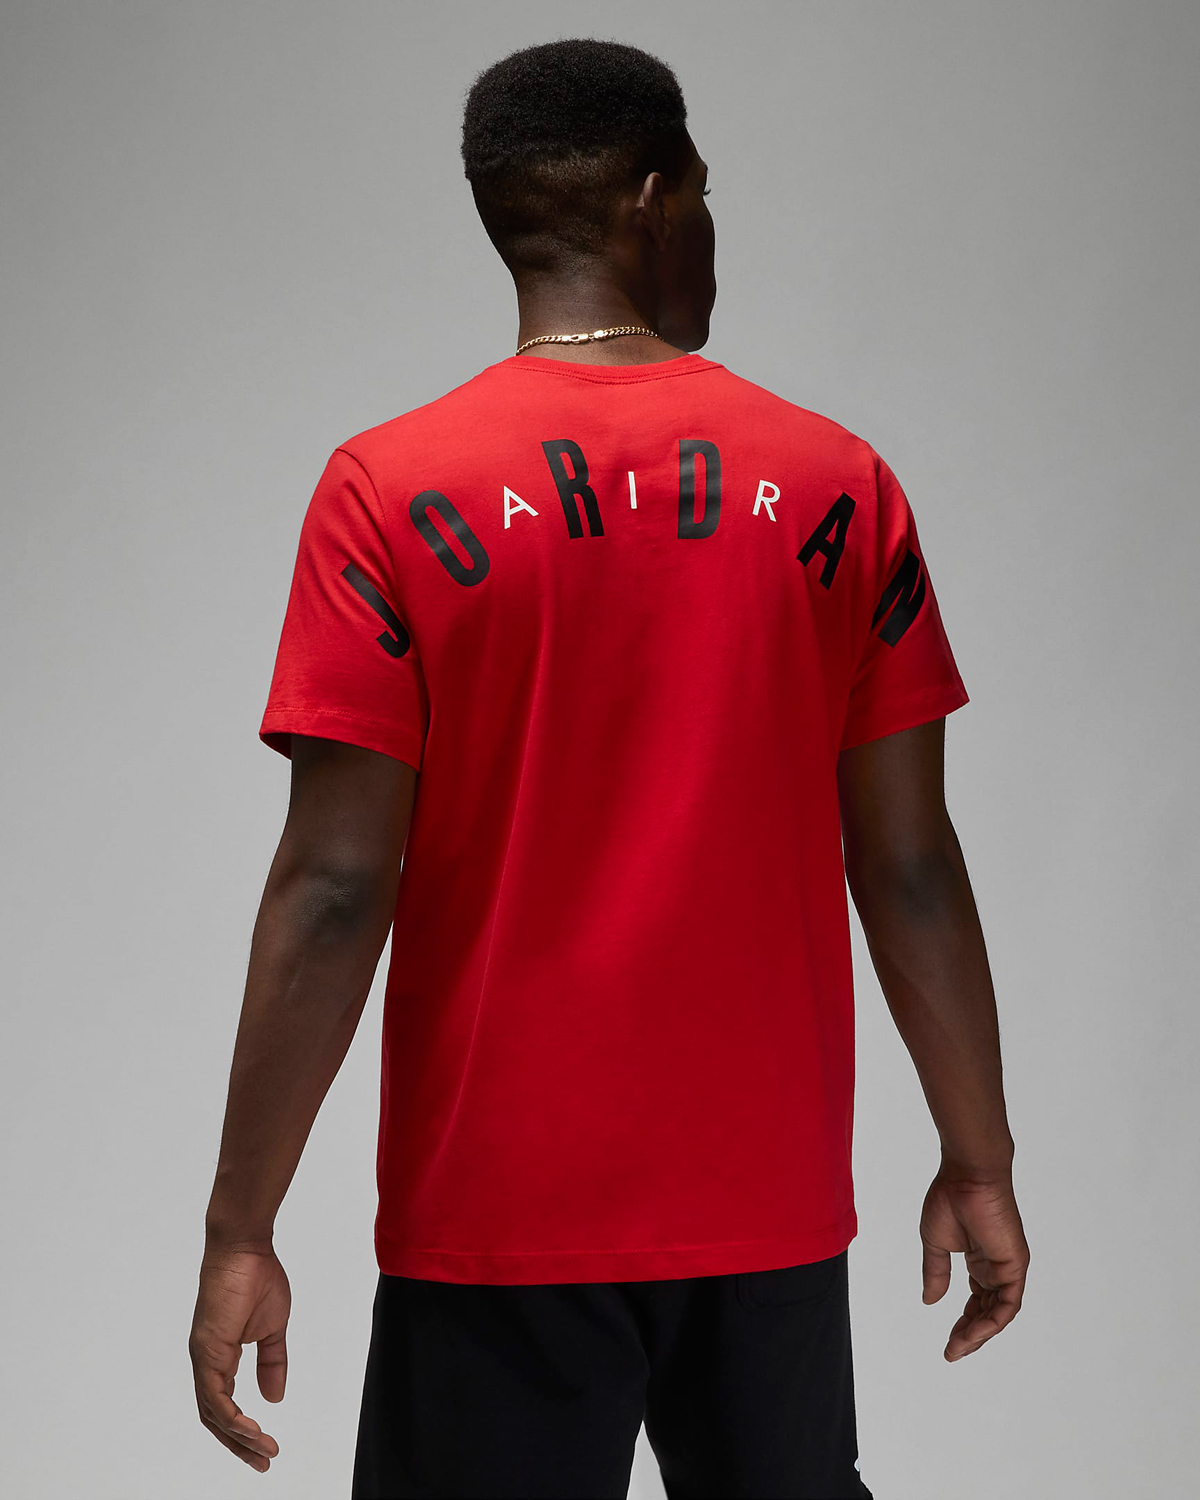 fire-red-air-jordan-3-t-shirt-2